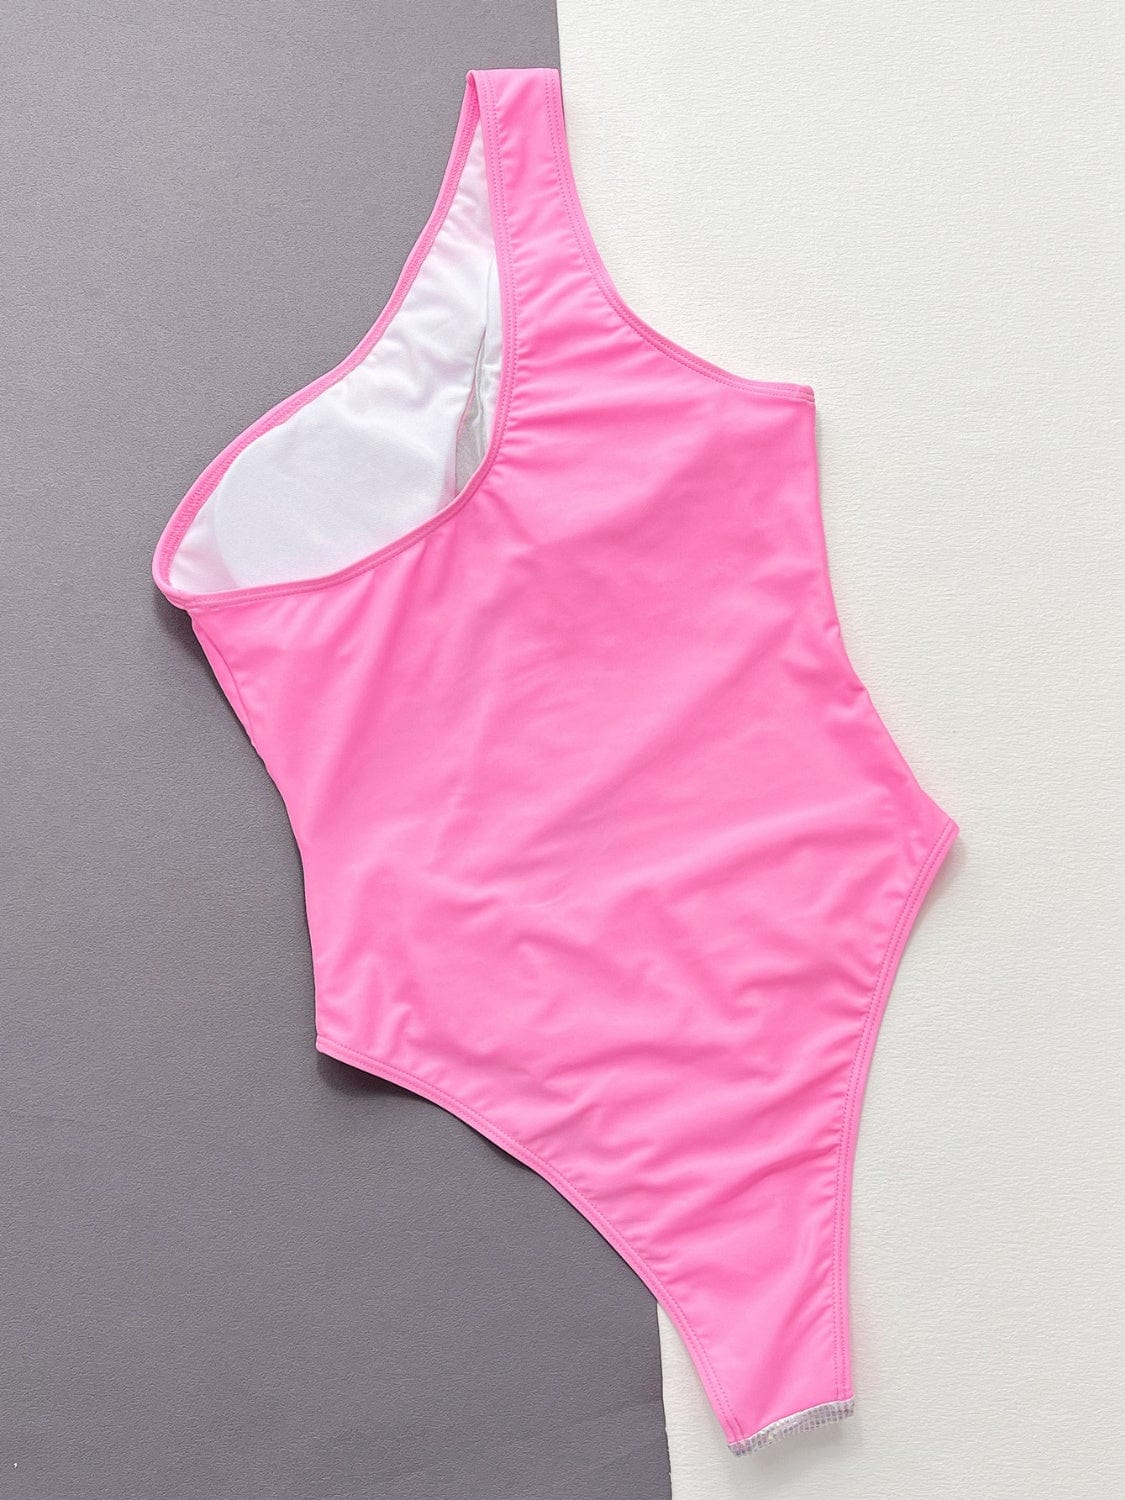 Wholesale Striped Bodycon Stretch Plus Size Bikini For Women Plus Size 5XL  Beachwear From Oxxxy, $16.8